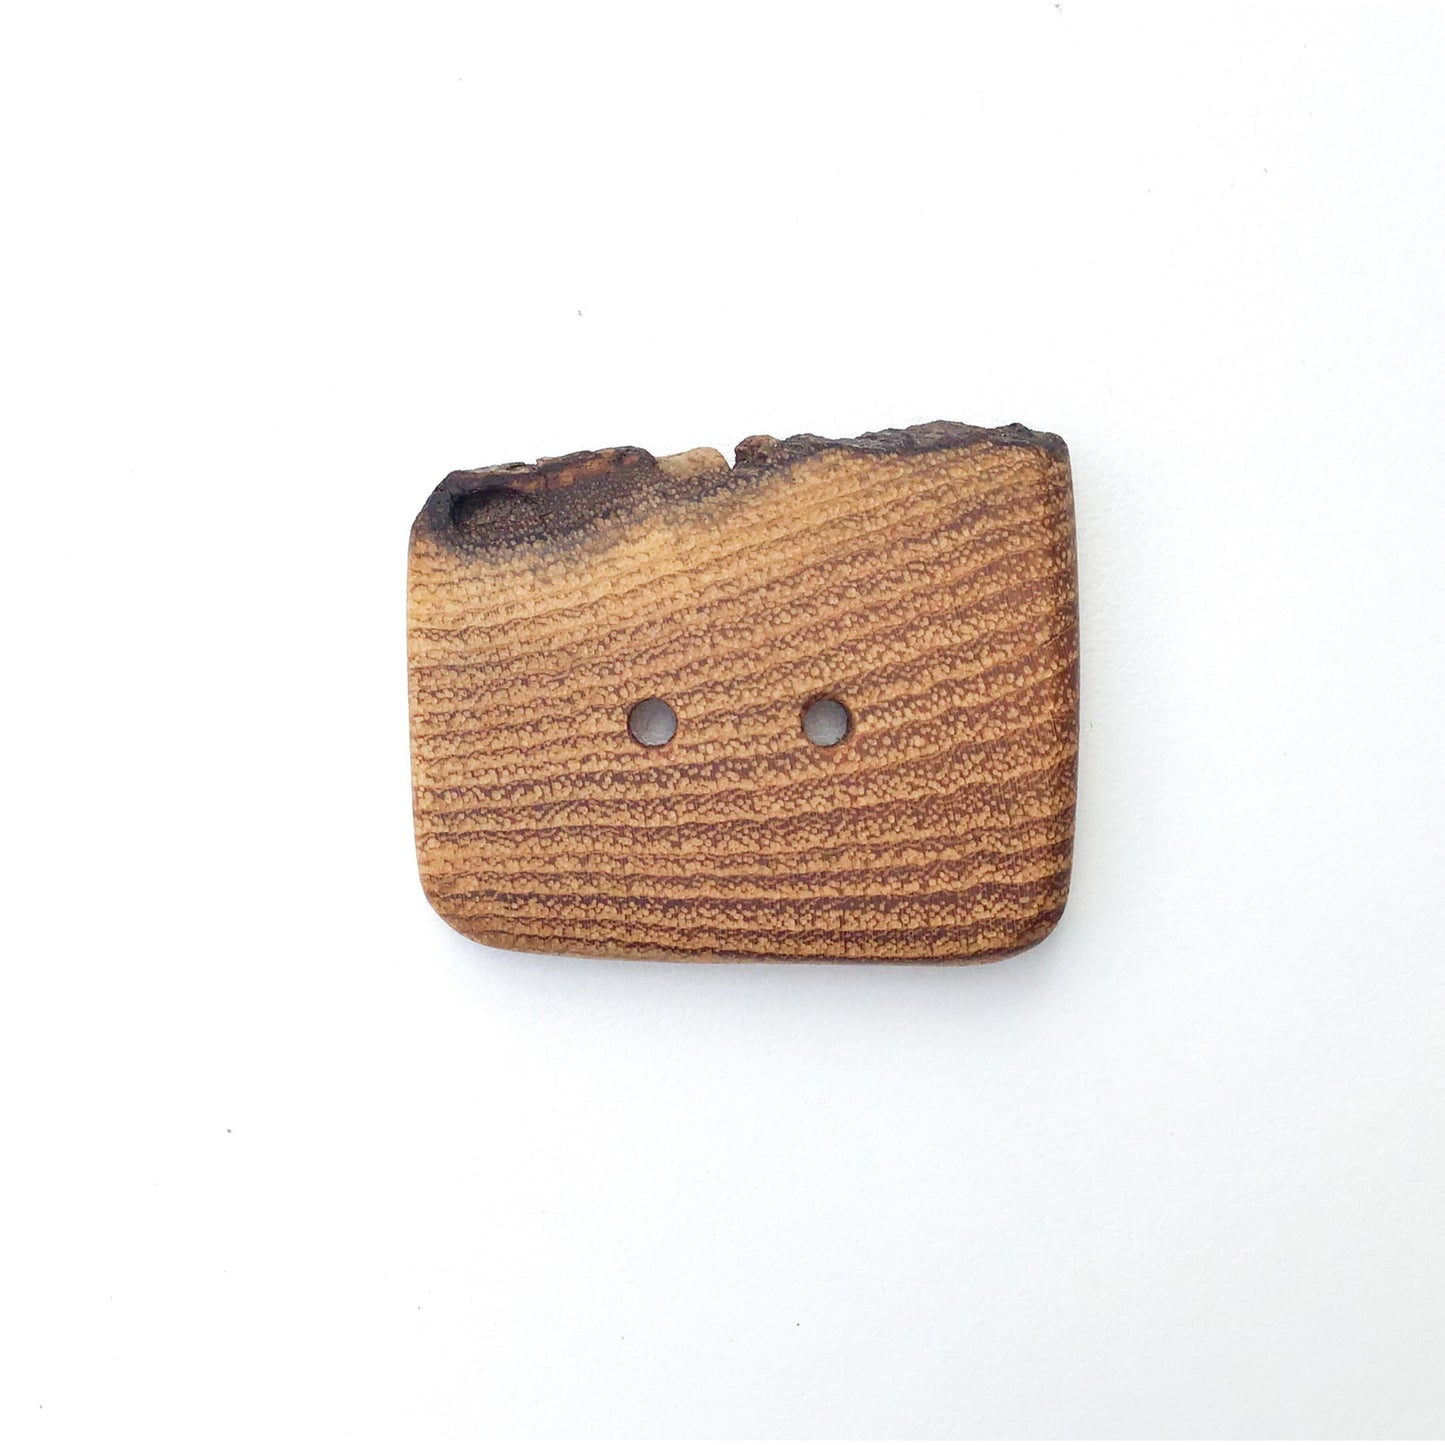 Live Edge Black Locust Wood Button - 1 5/8" x 1 1/4" Large Wooden Button